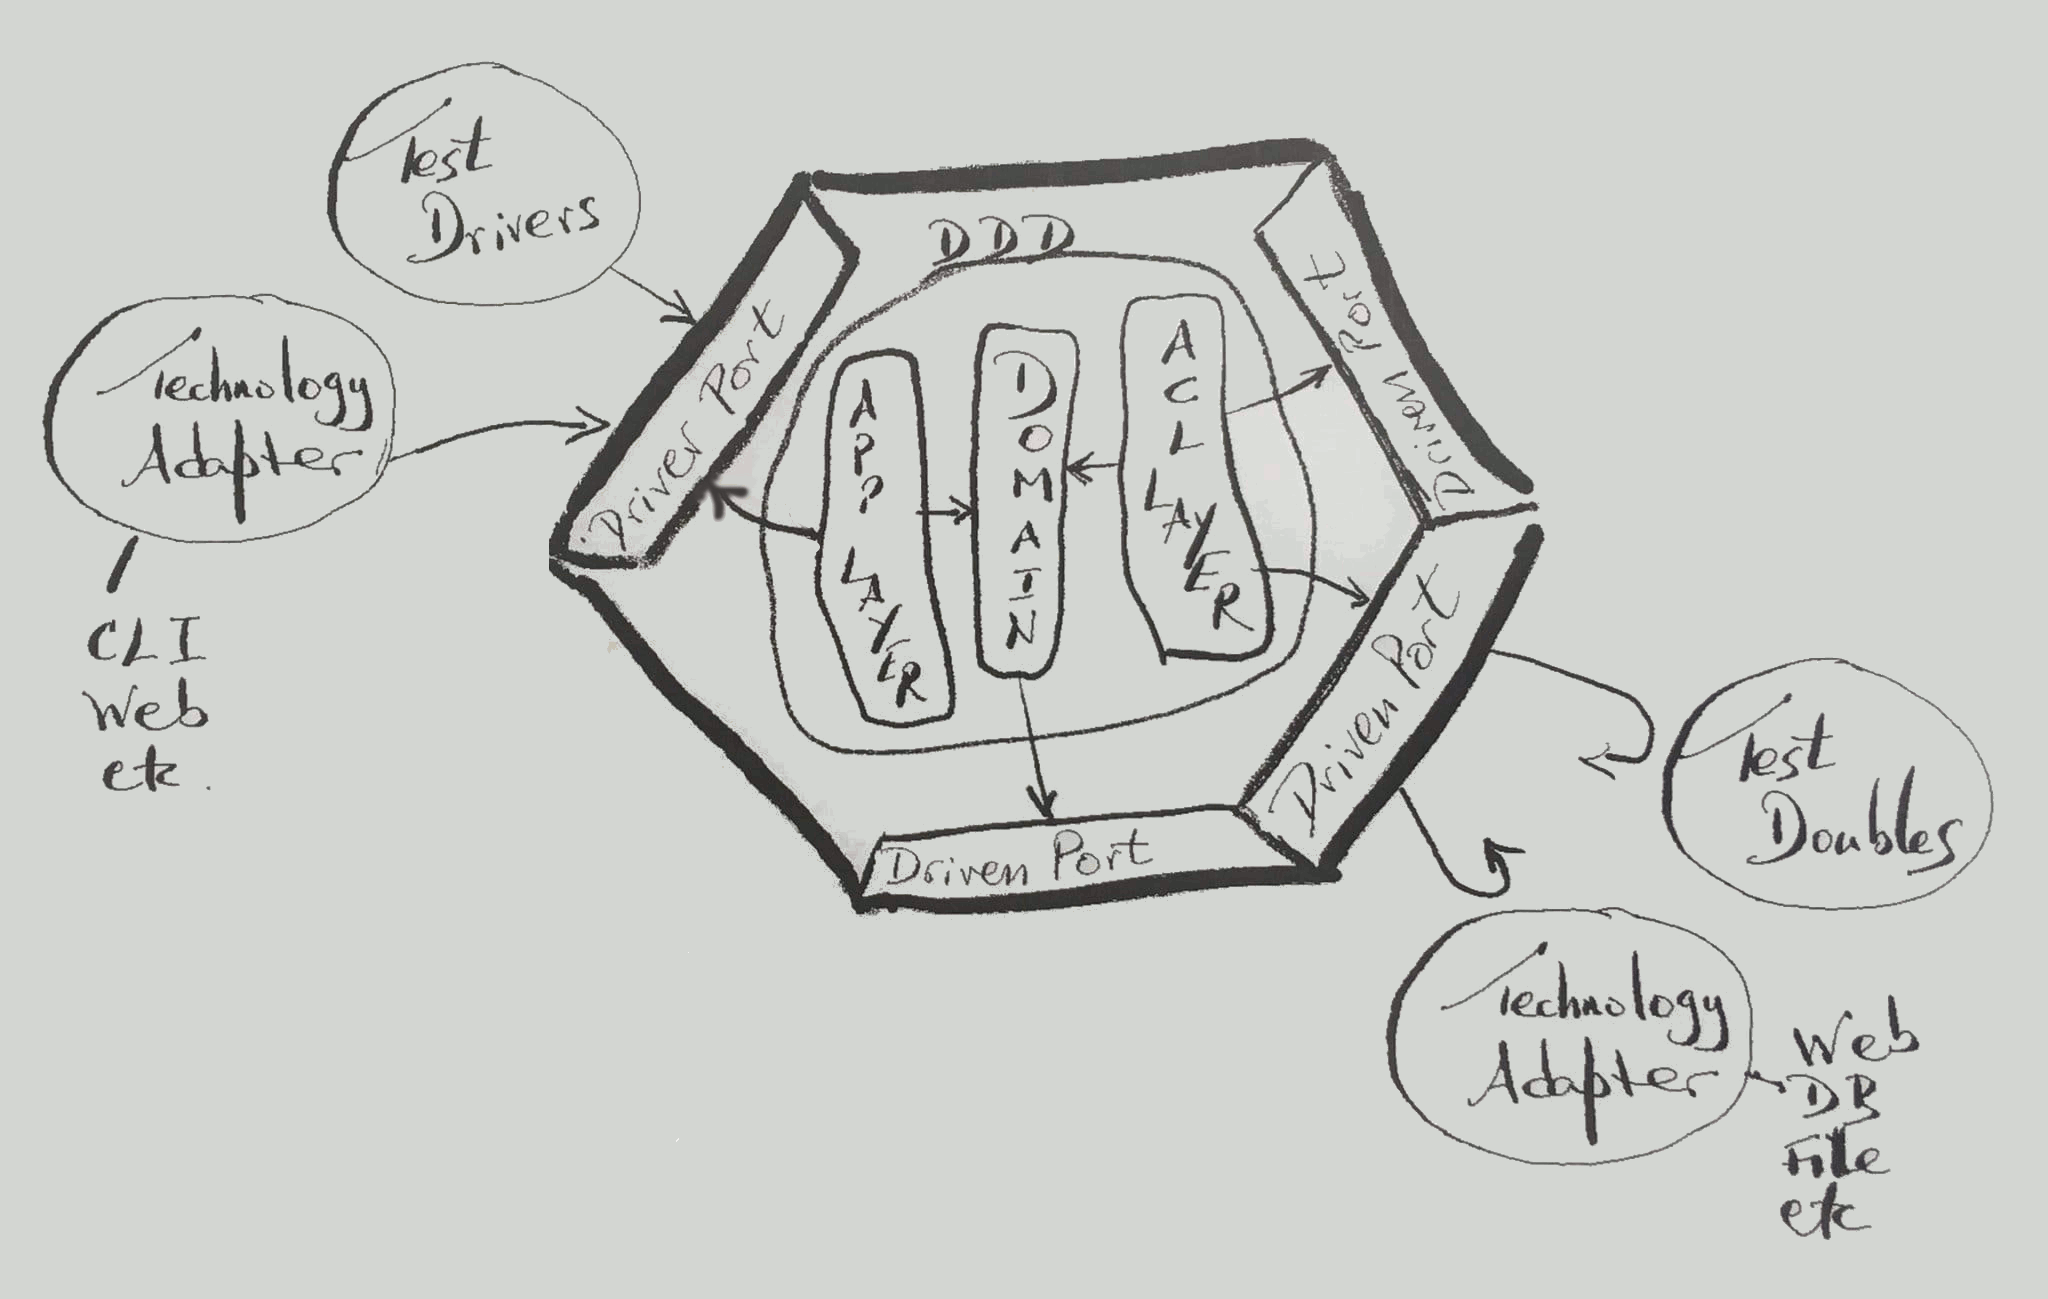 Figure 2: DDD into Hexagonal Architecture